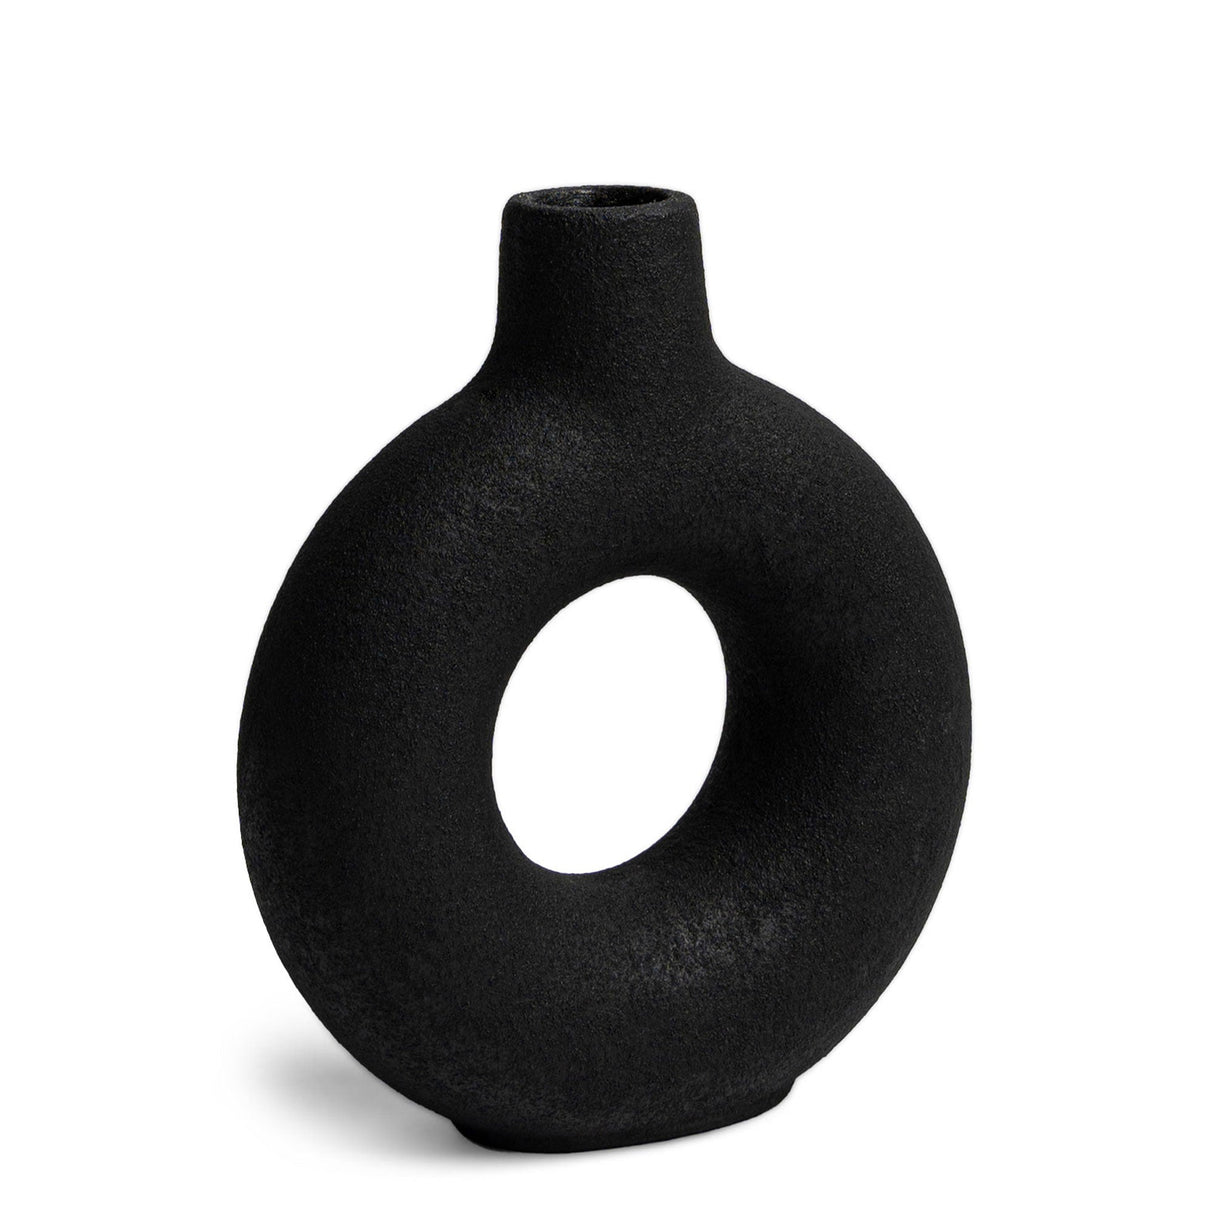 Villa Moda Oona Decorative Modern Ring Vase, Medium, Black